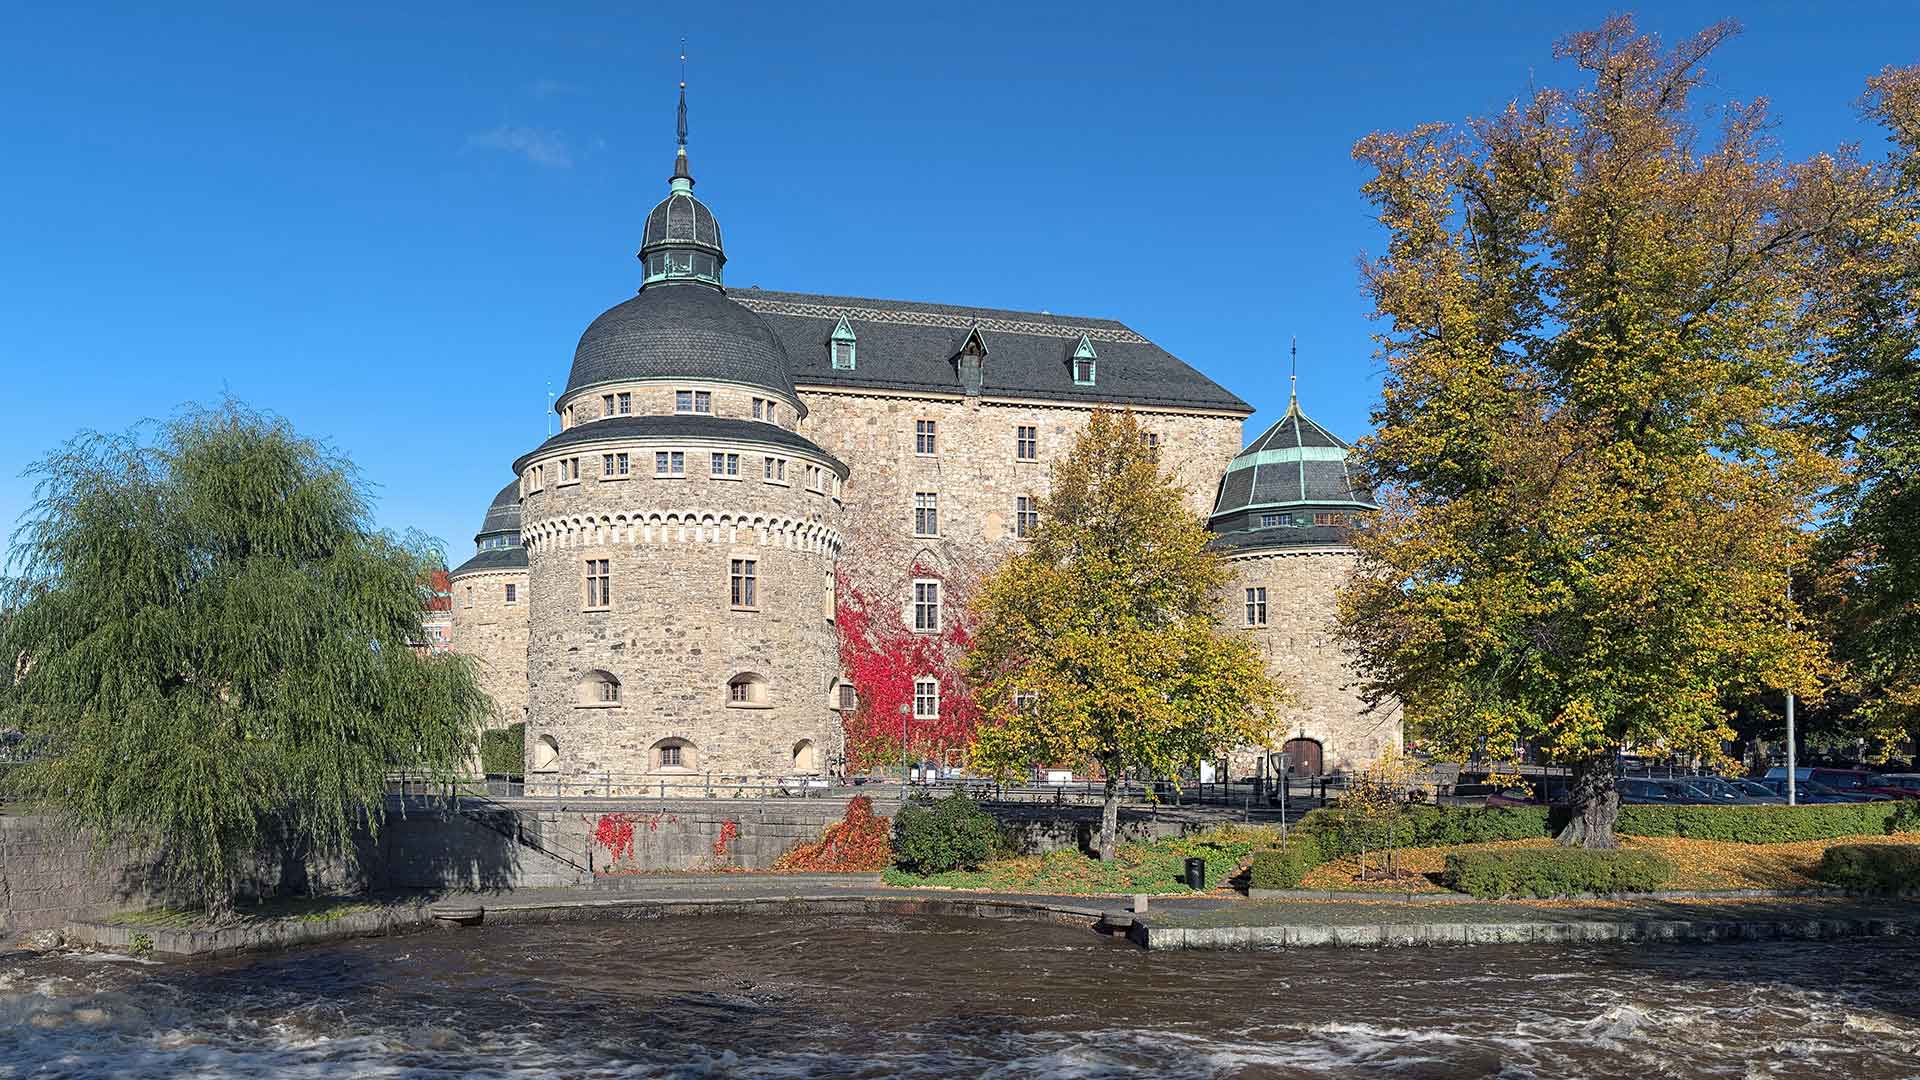 Örebro Castle in Sweden